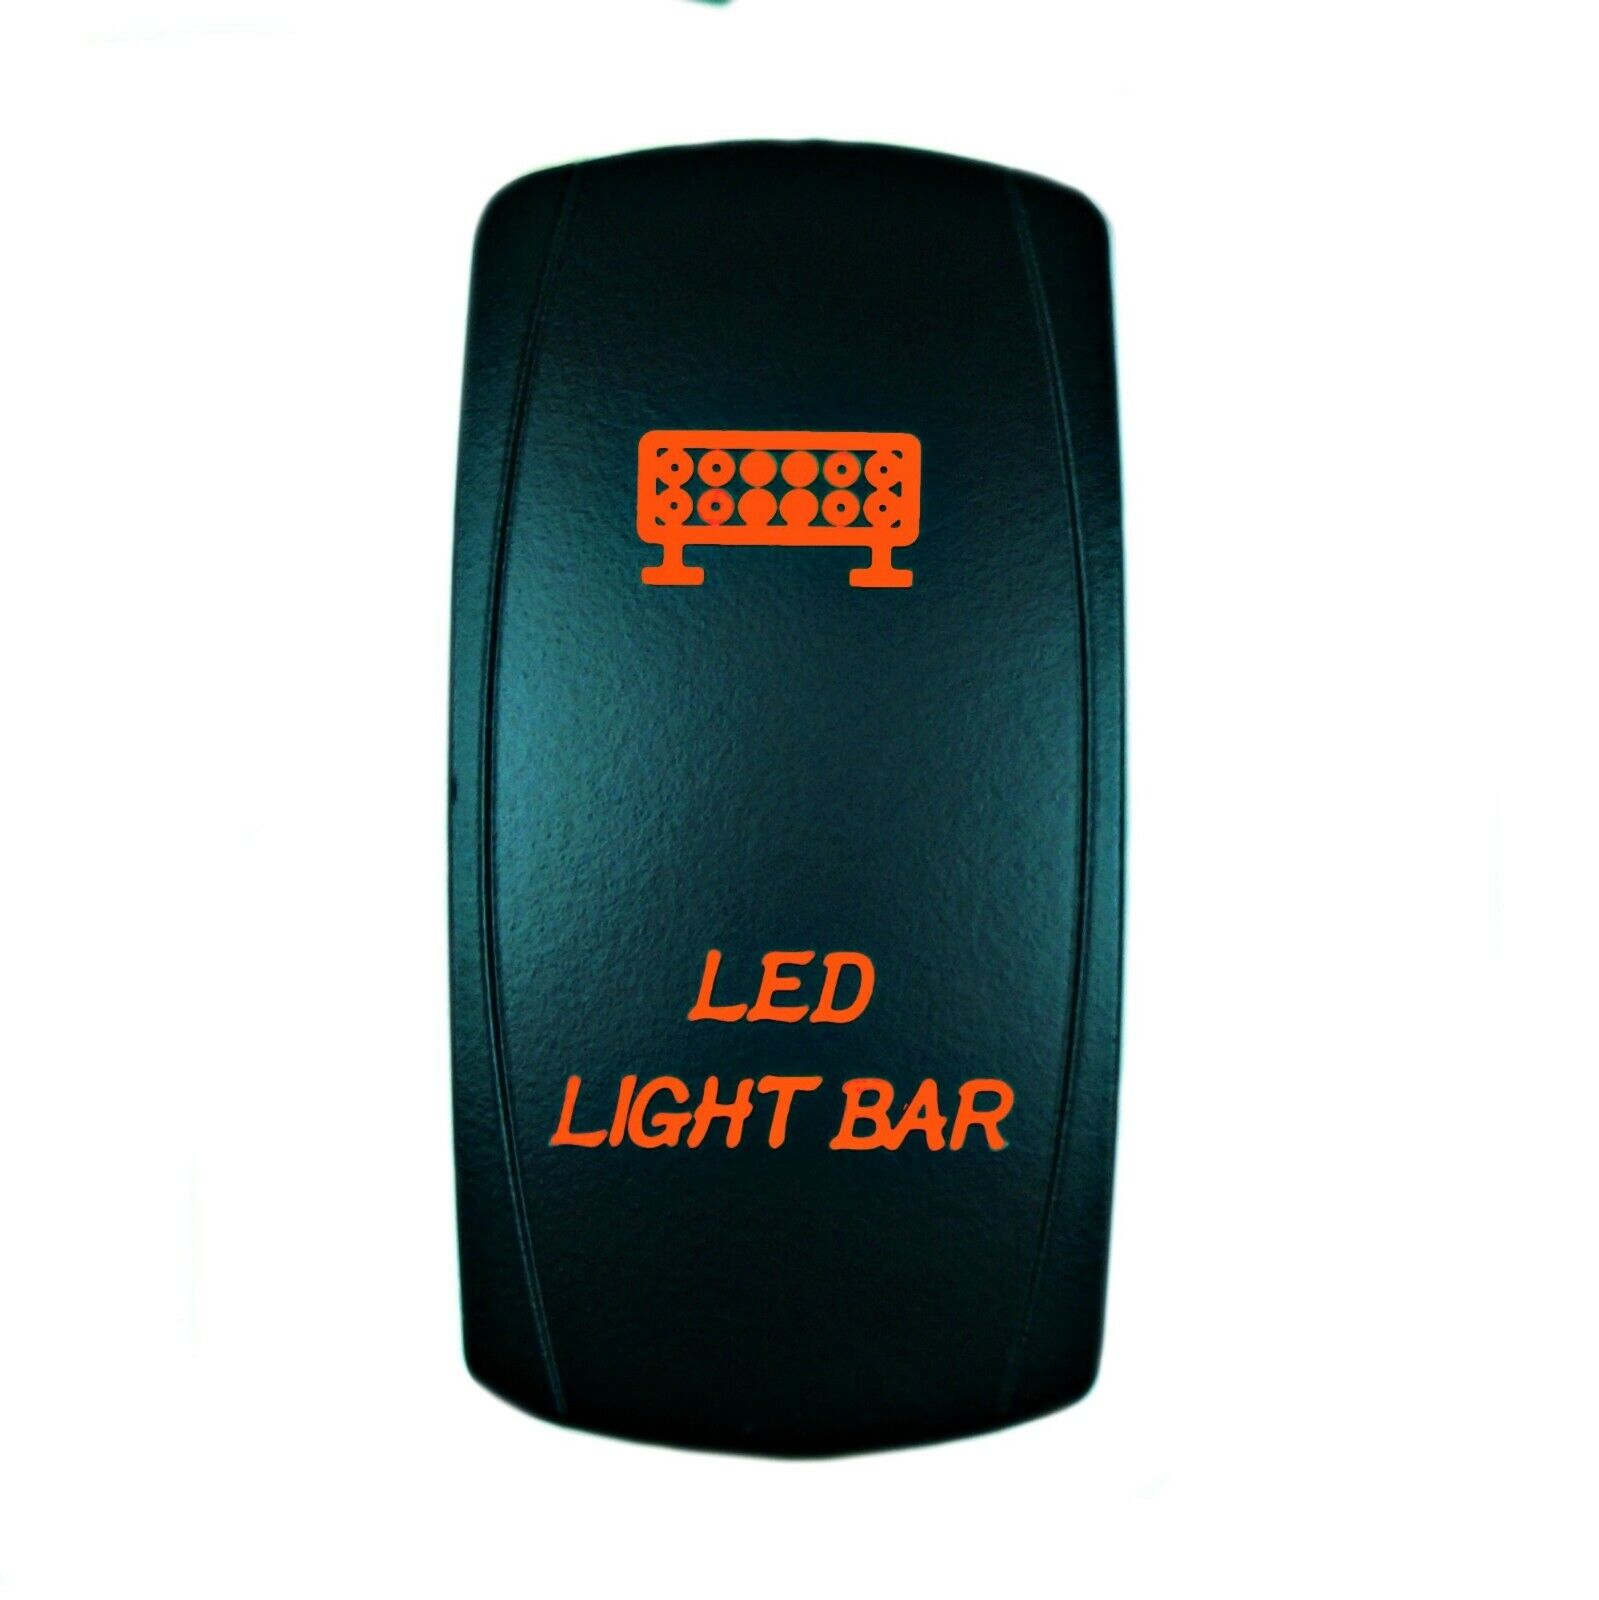 Orange LED LIGHT BAR Rocker Switch 5 Pin 12V 20A Waterproof for Car UTV Boat